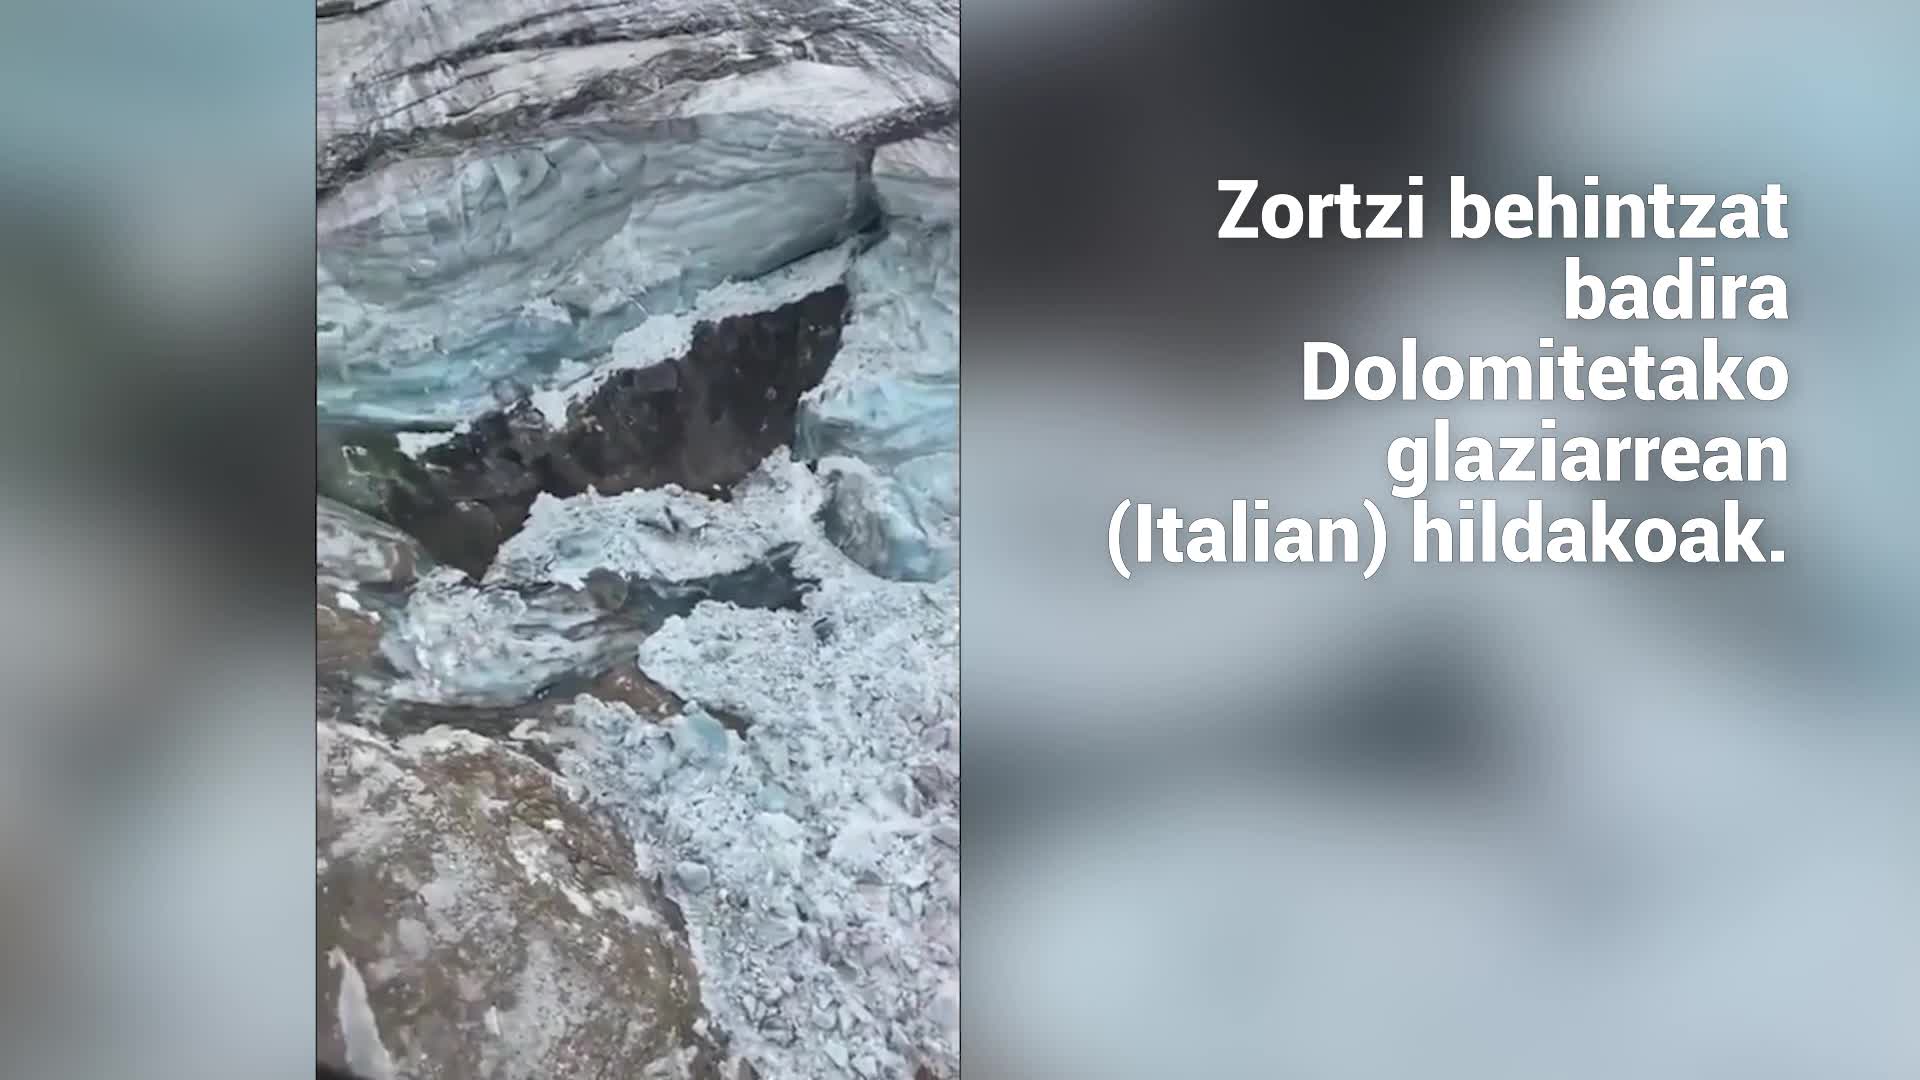 Zortzi behintzat badira Dolomitetako glaziarrean (Italian) hildakoak